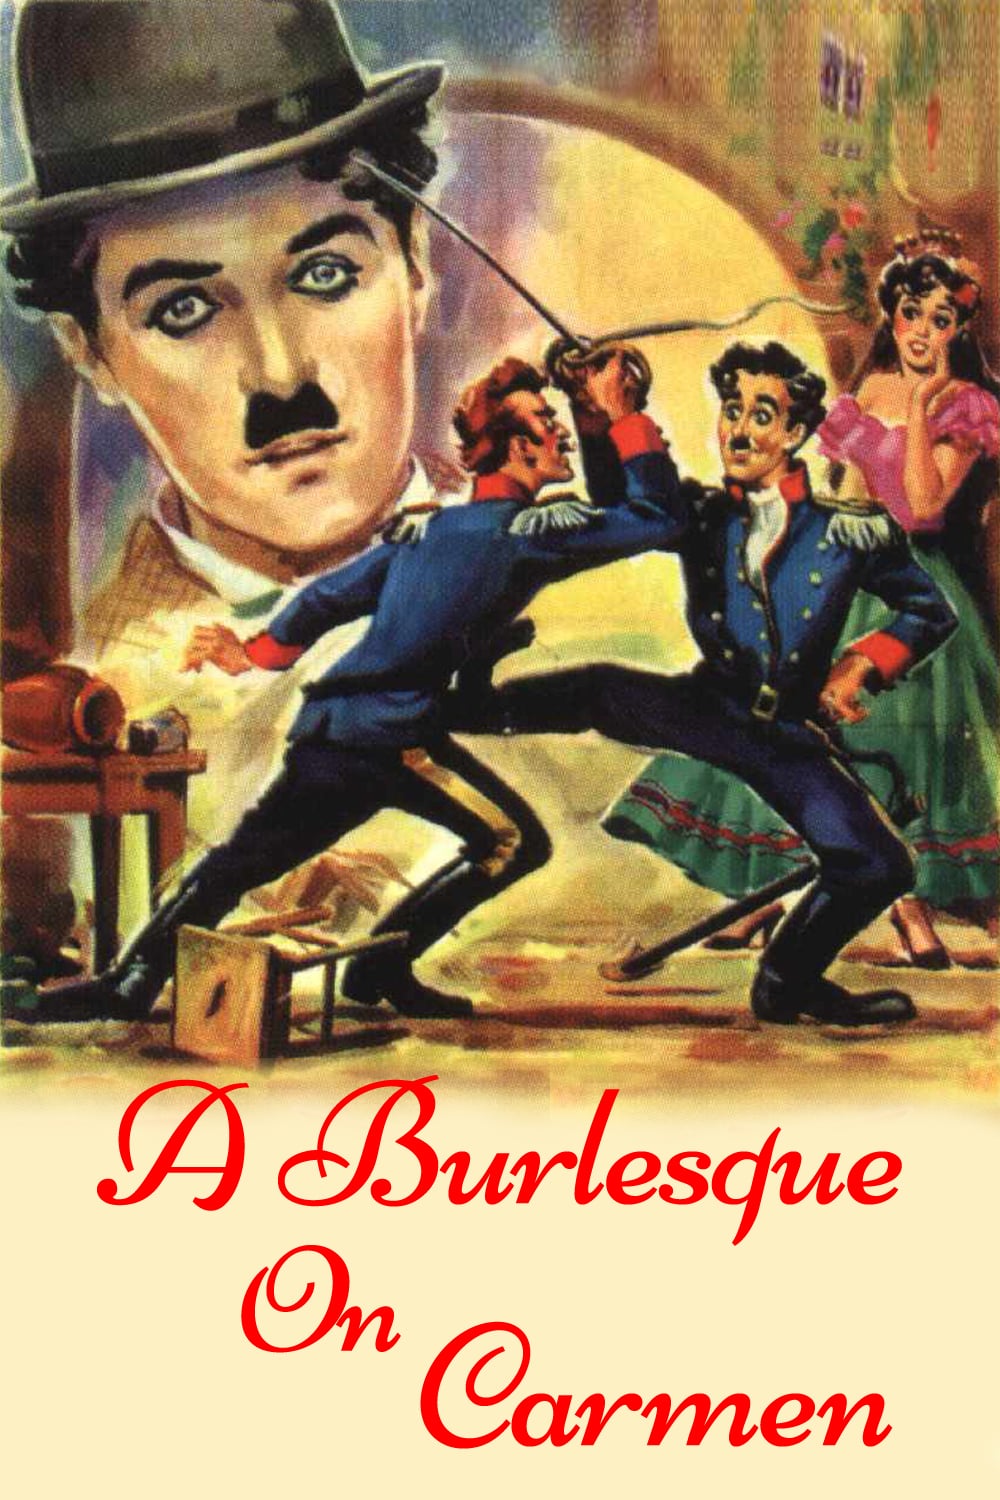 Plakat von "Charlie Chaplins Carmen-Parodie"